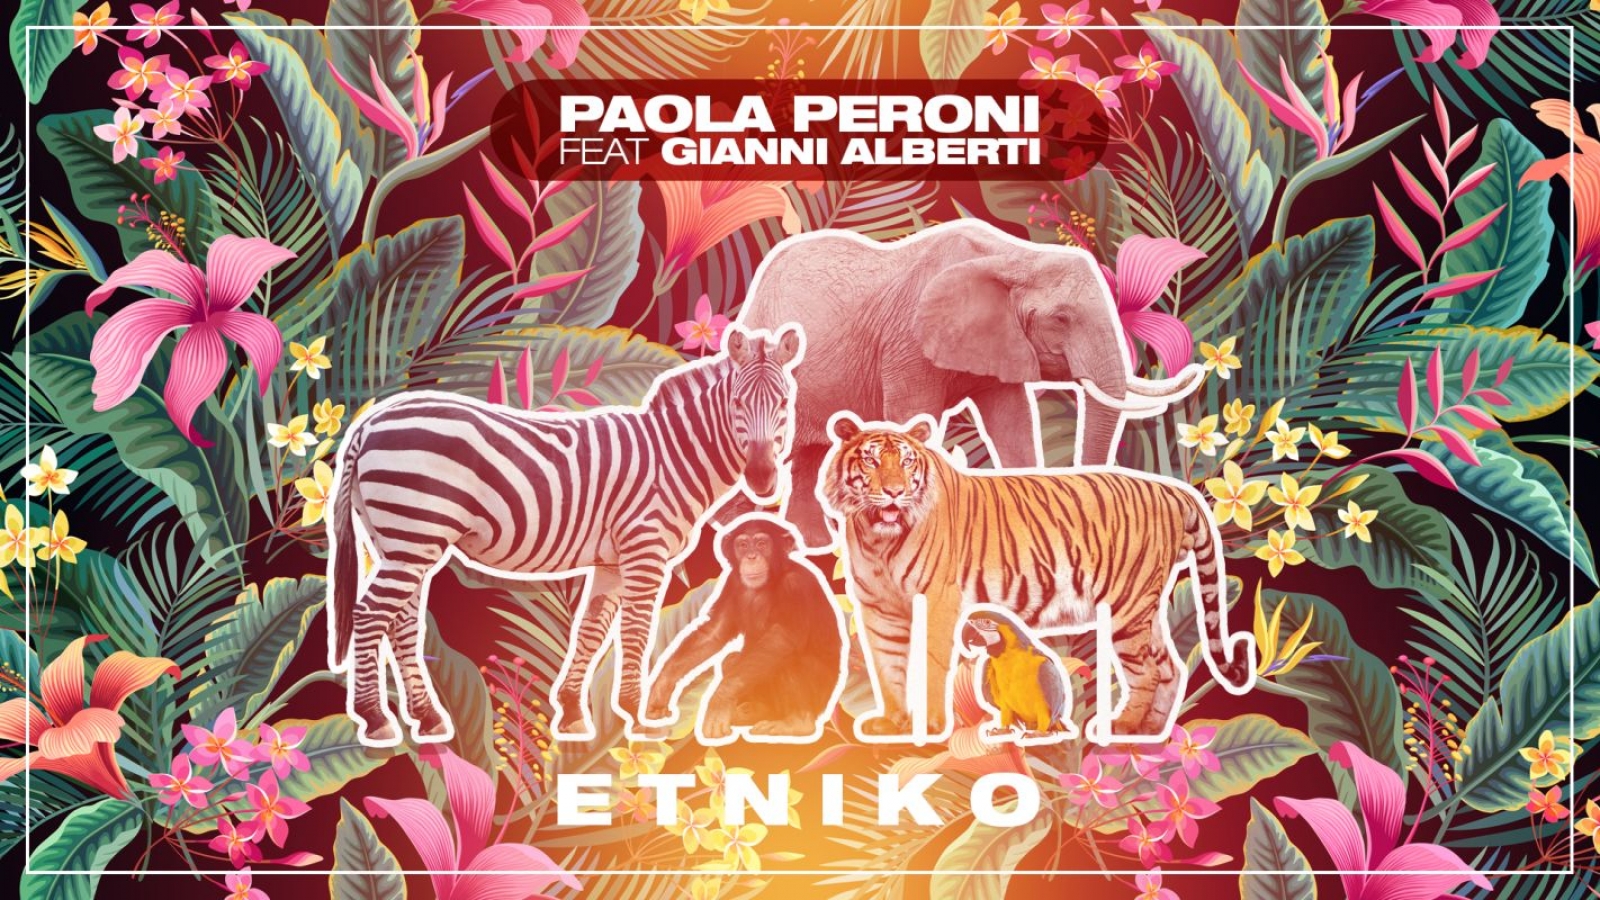 Paola_Peroni_Feat_Gianni_Alberti_Etniko_facebook 2